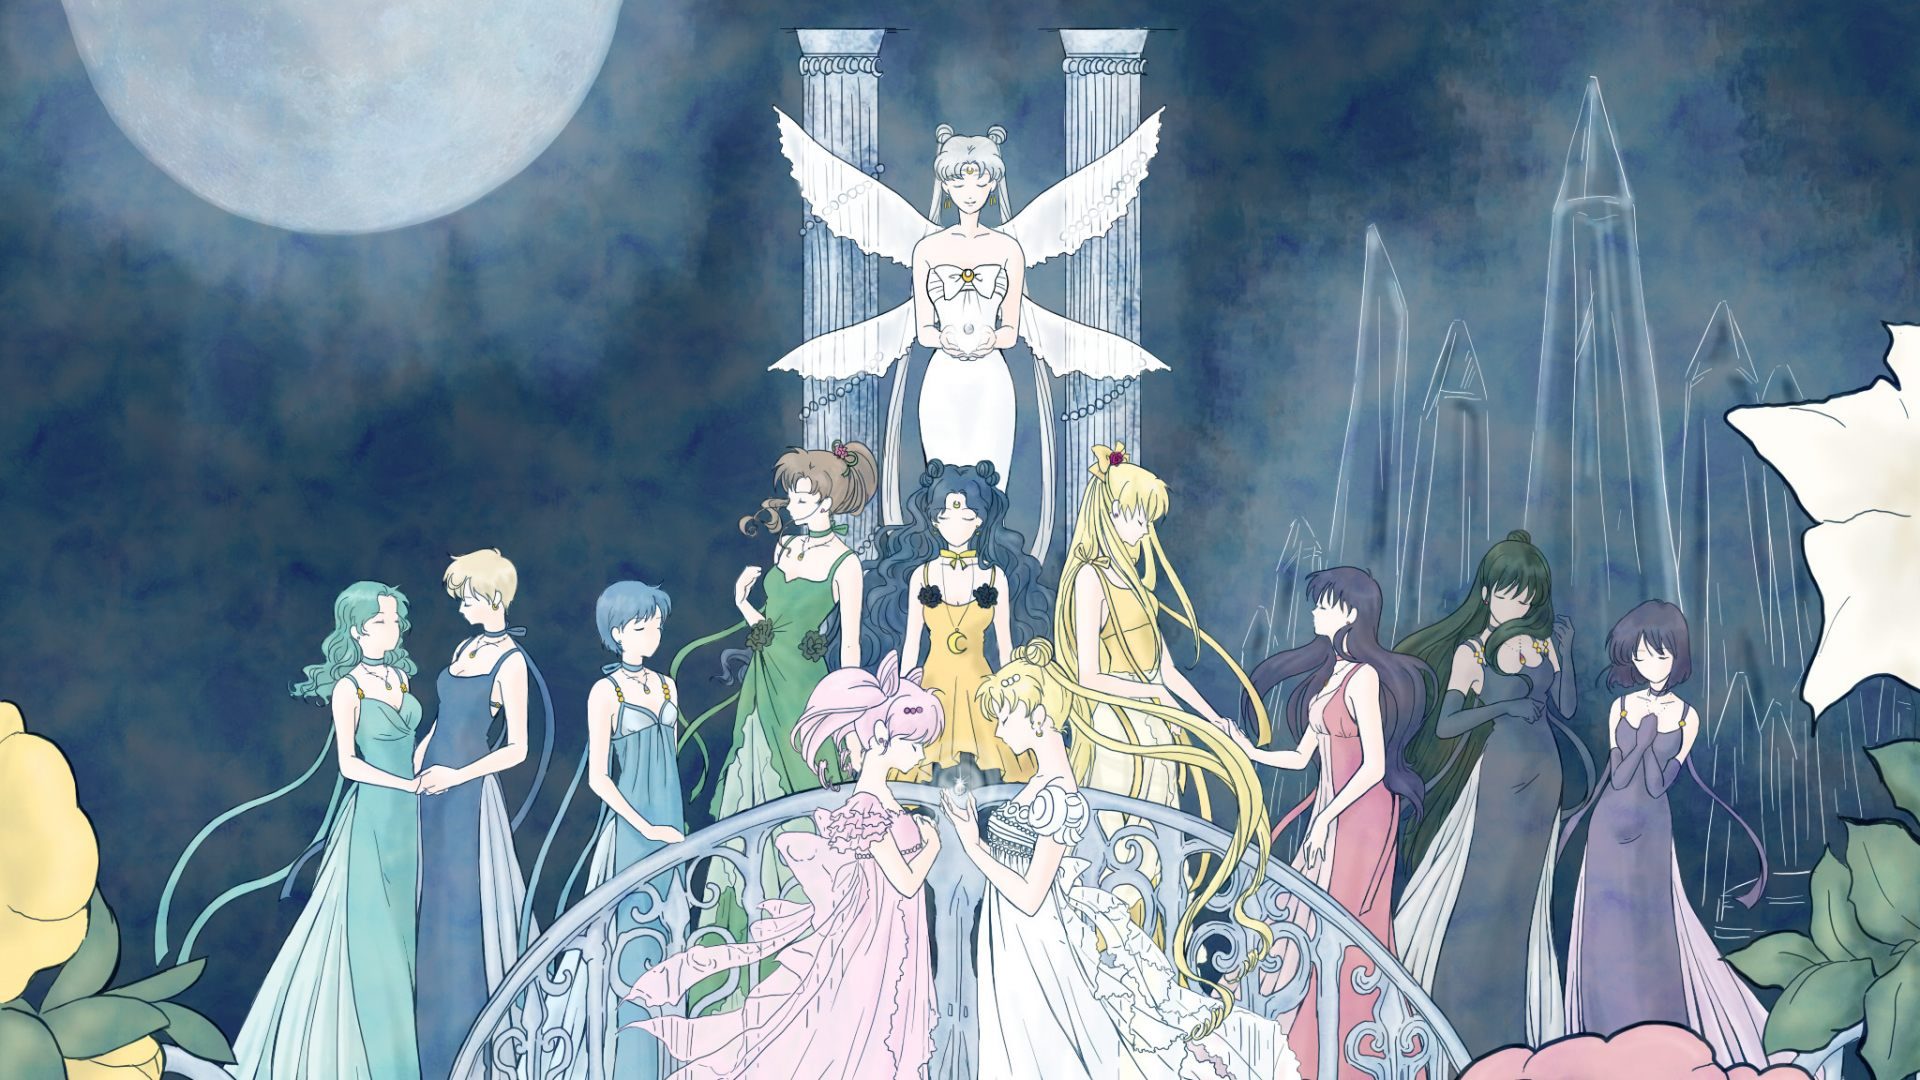 Serie Anime Sailor Moon Fondos De Pantalla Y Wallpaper